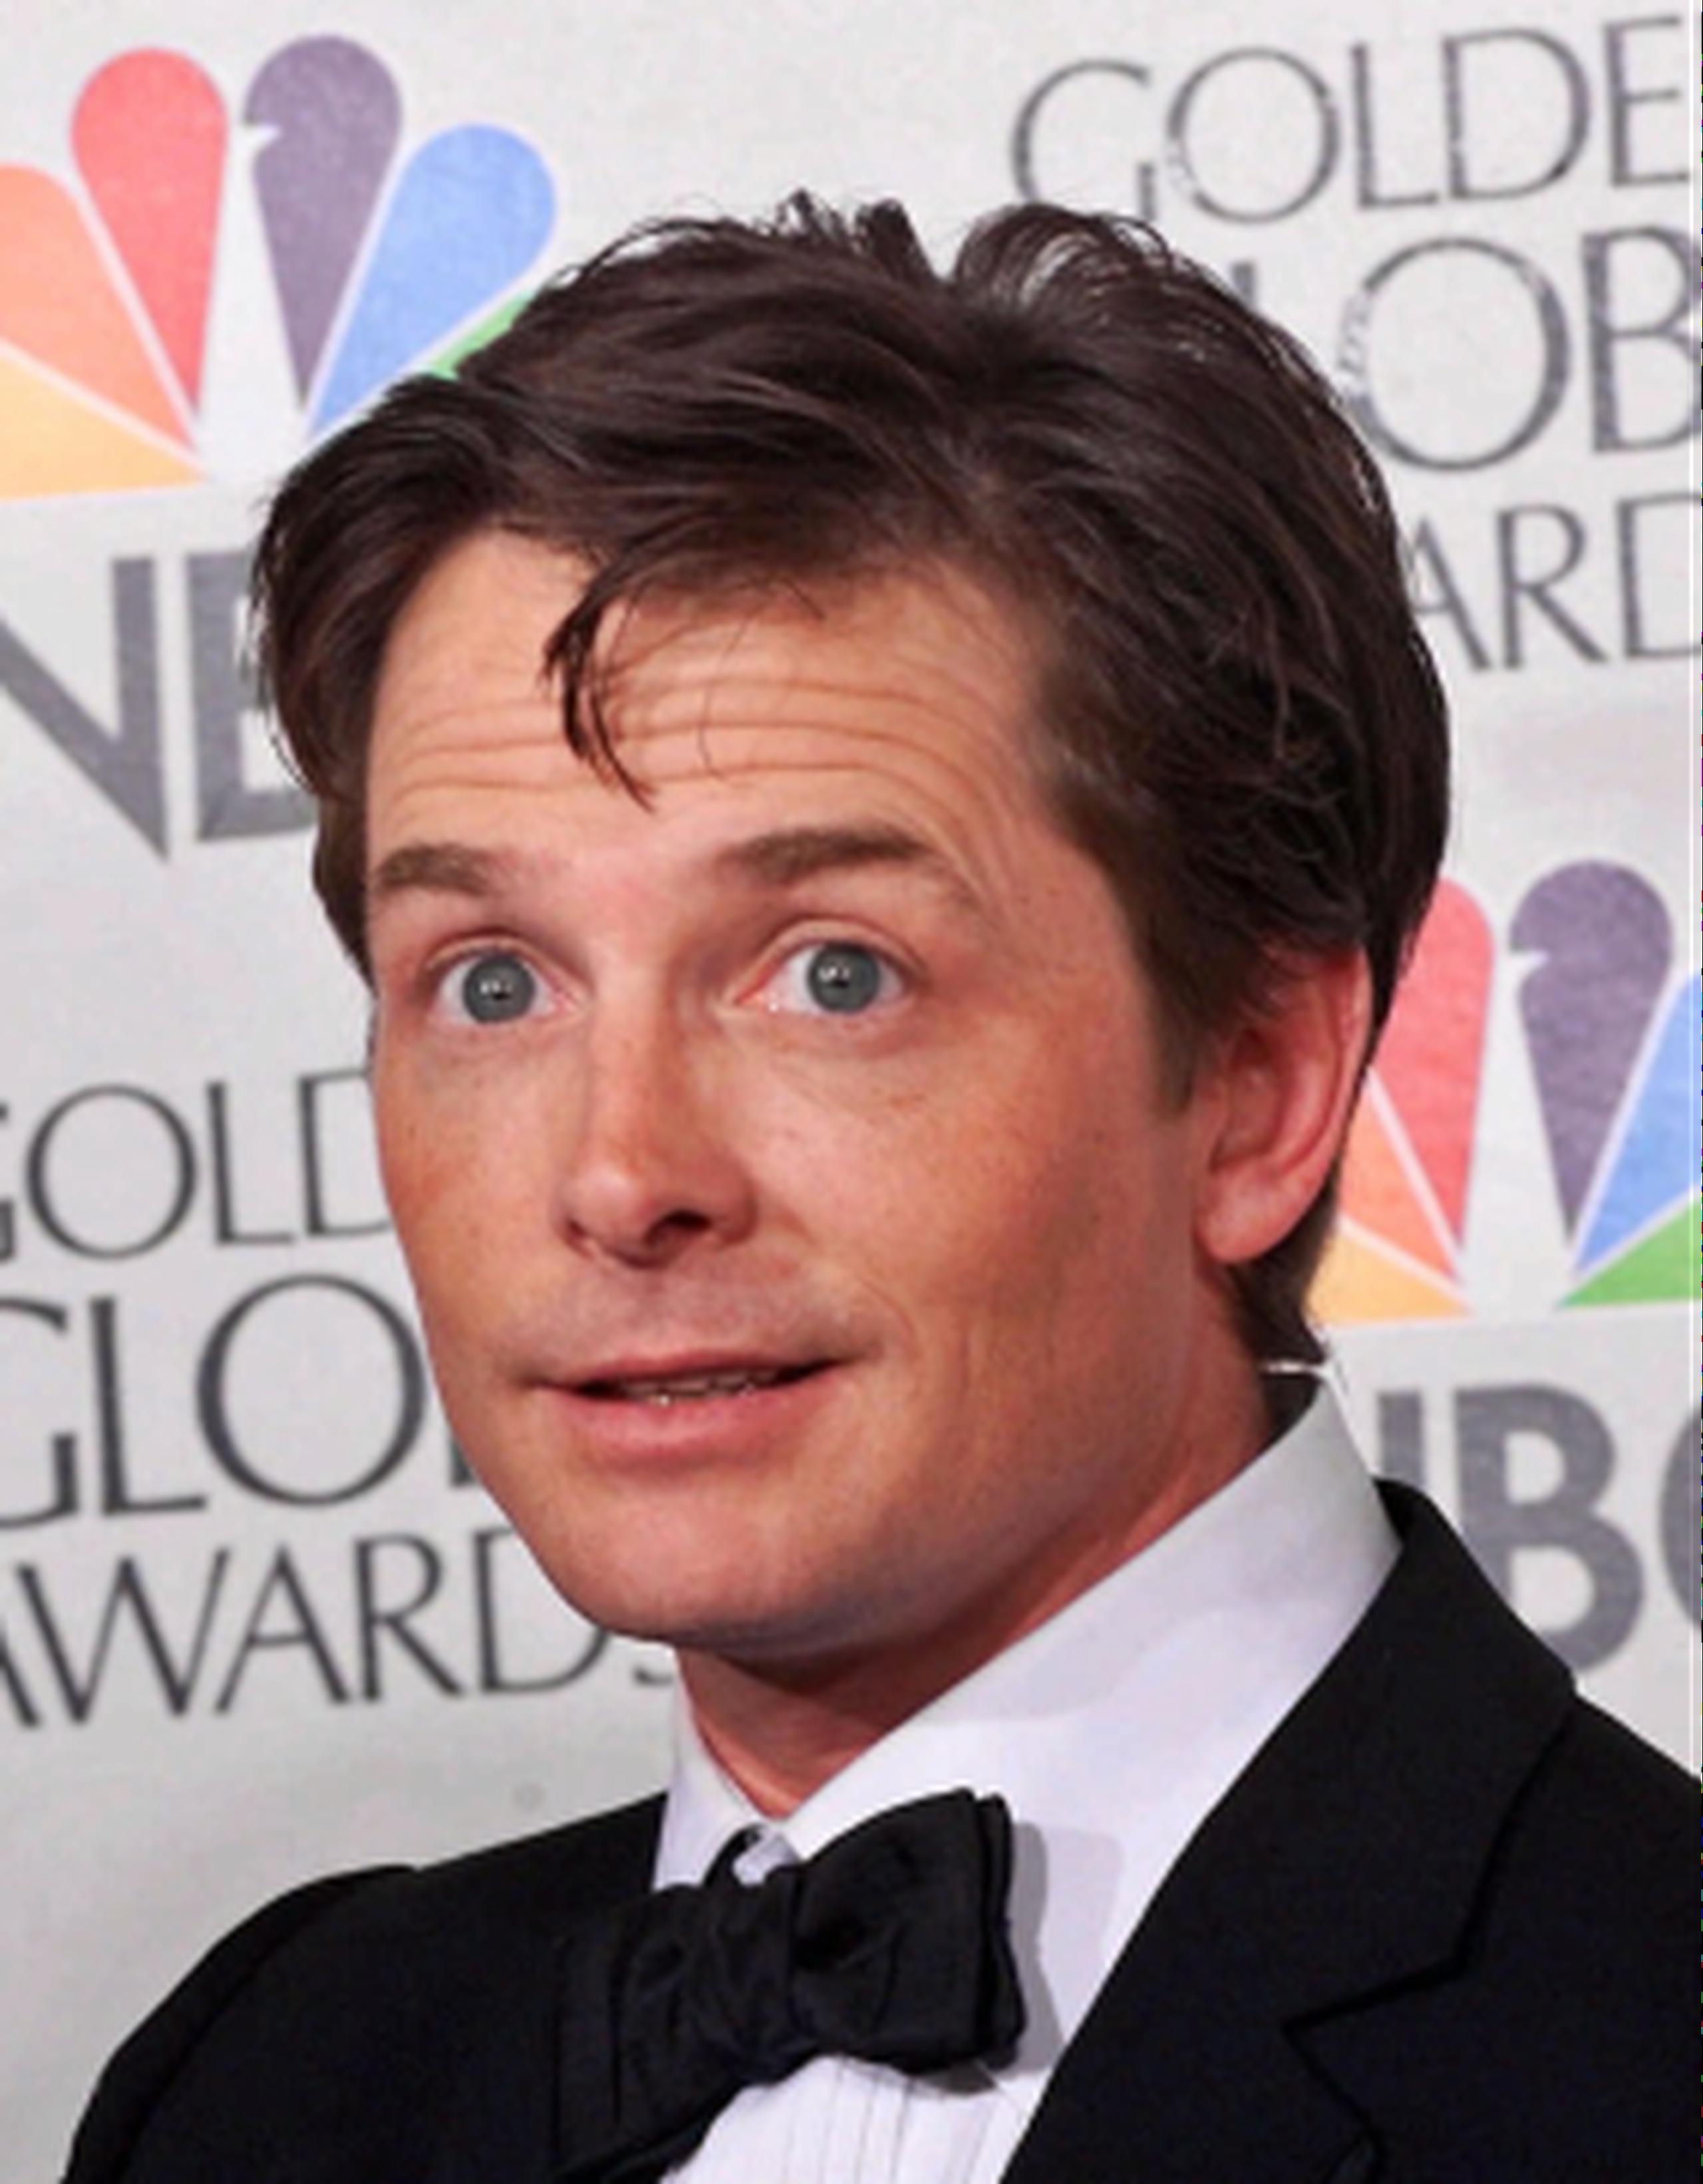 En una nueva comedia que transmitirá la cadena NBC, Michael J. Fox interpretará a un comentarista de noticias que se ve obligado a dejar su empleo debido al Parkinson. (Archivo)